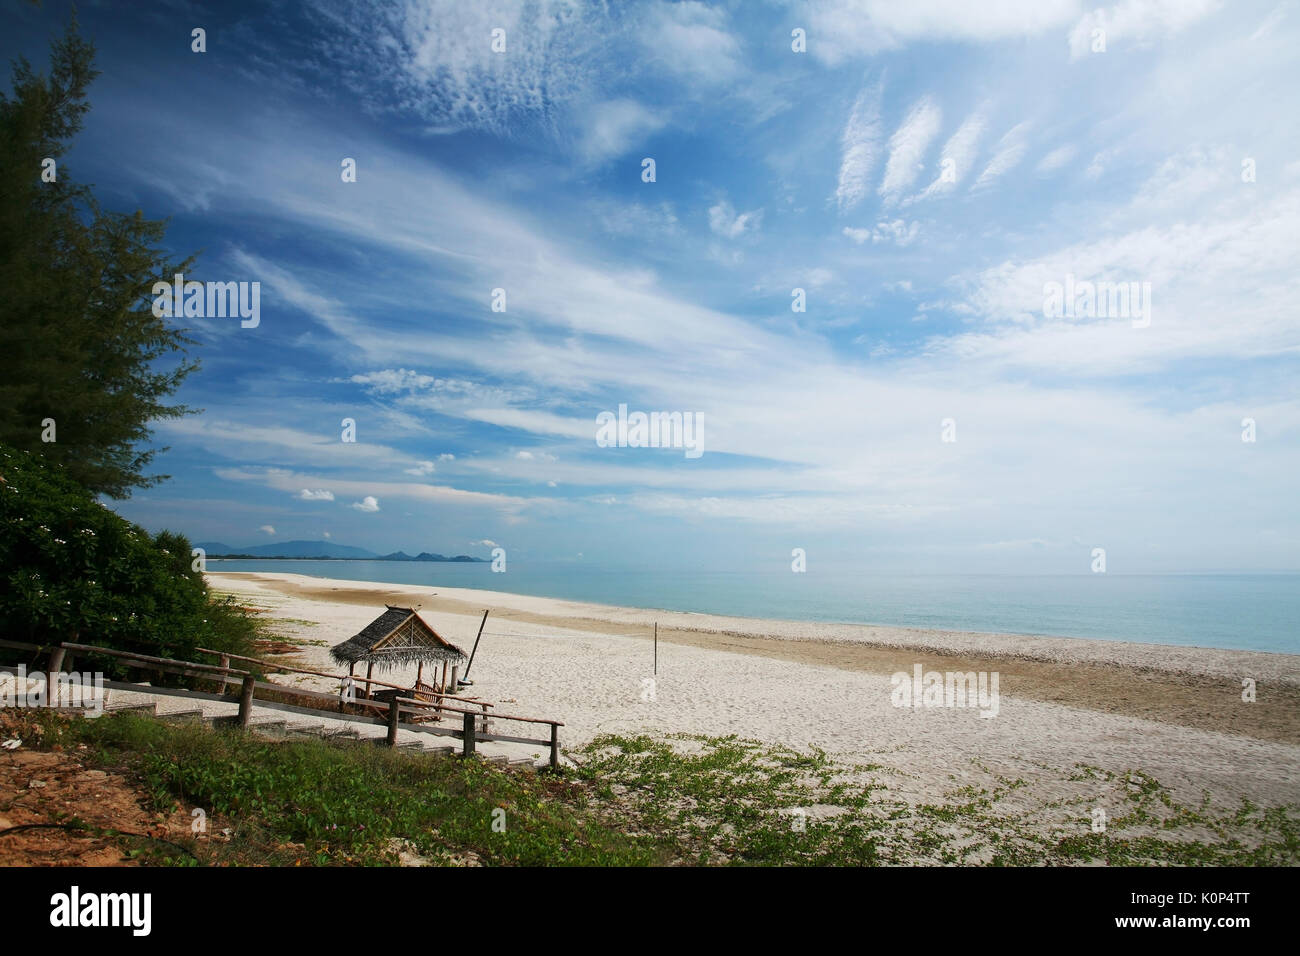 Tropical beach at Bang Saphan and Pranburi, Thailand Stock Photo